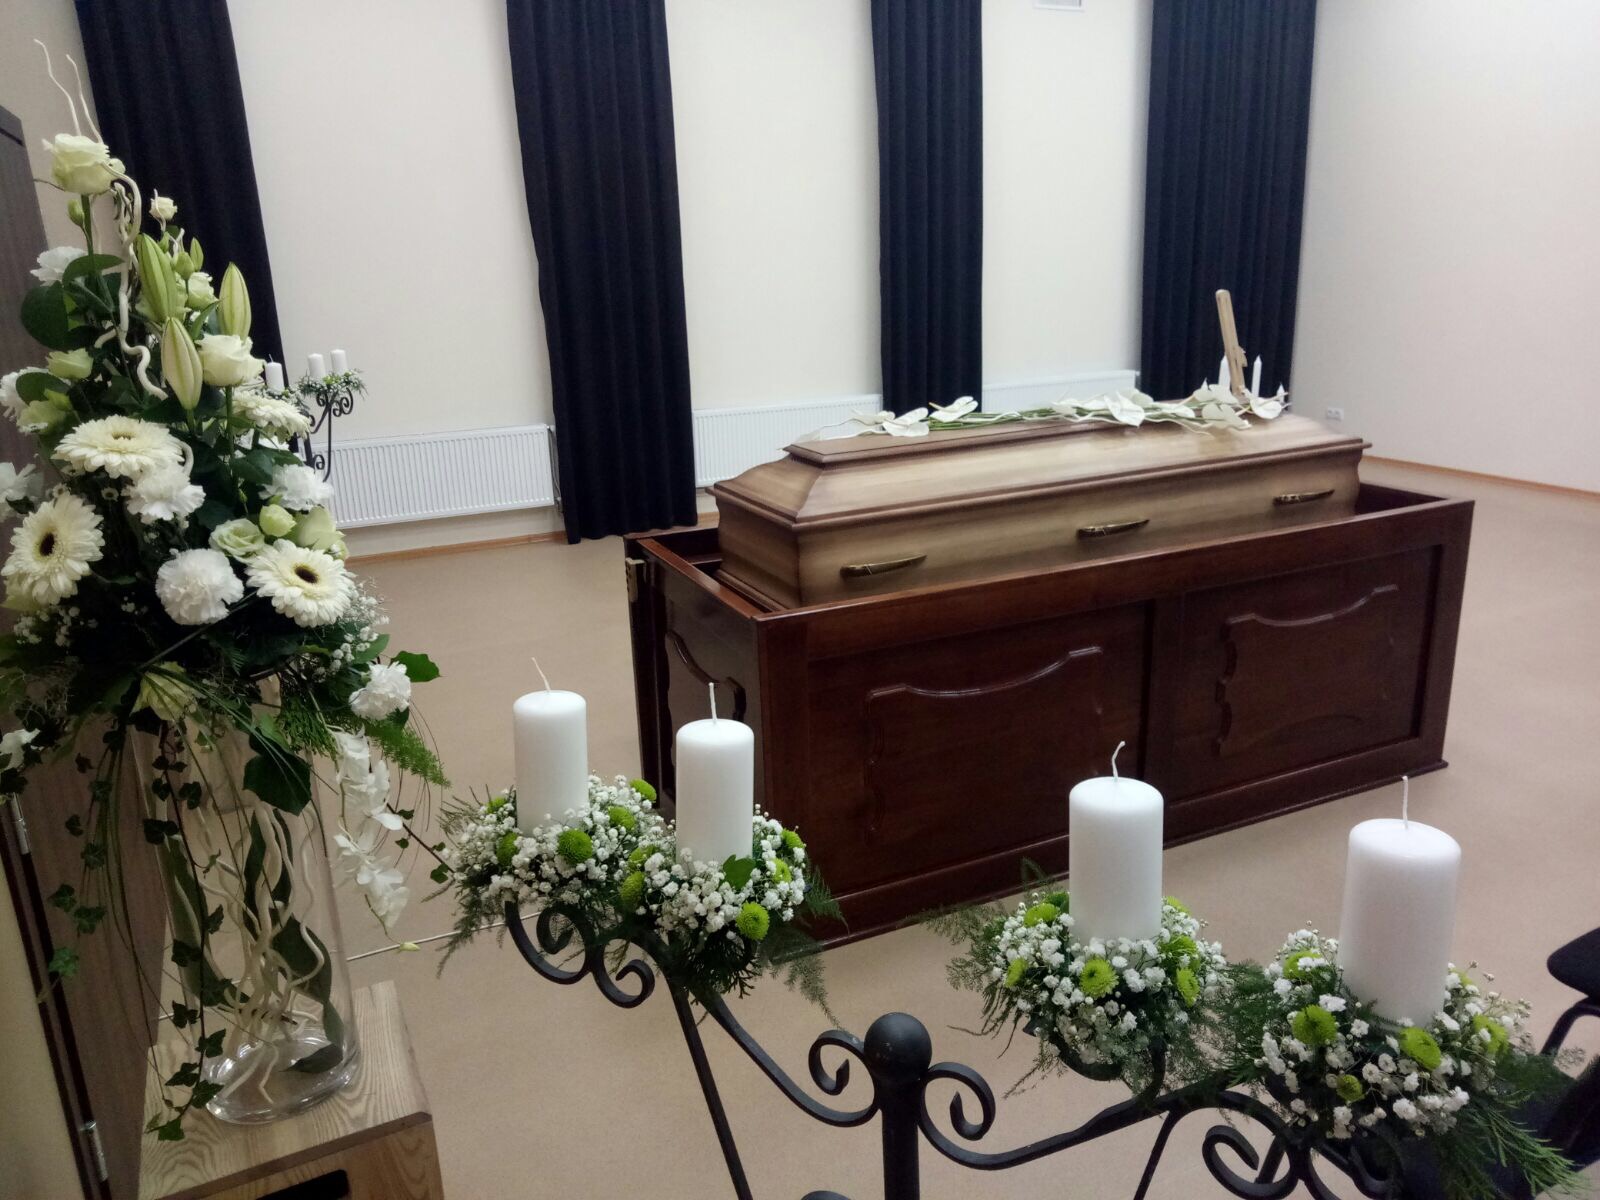 Apbedīšanas nams – krematorija. Atvadu zāle Valmierā